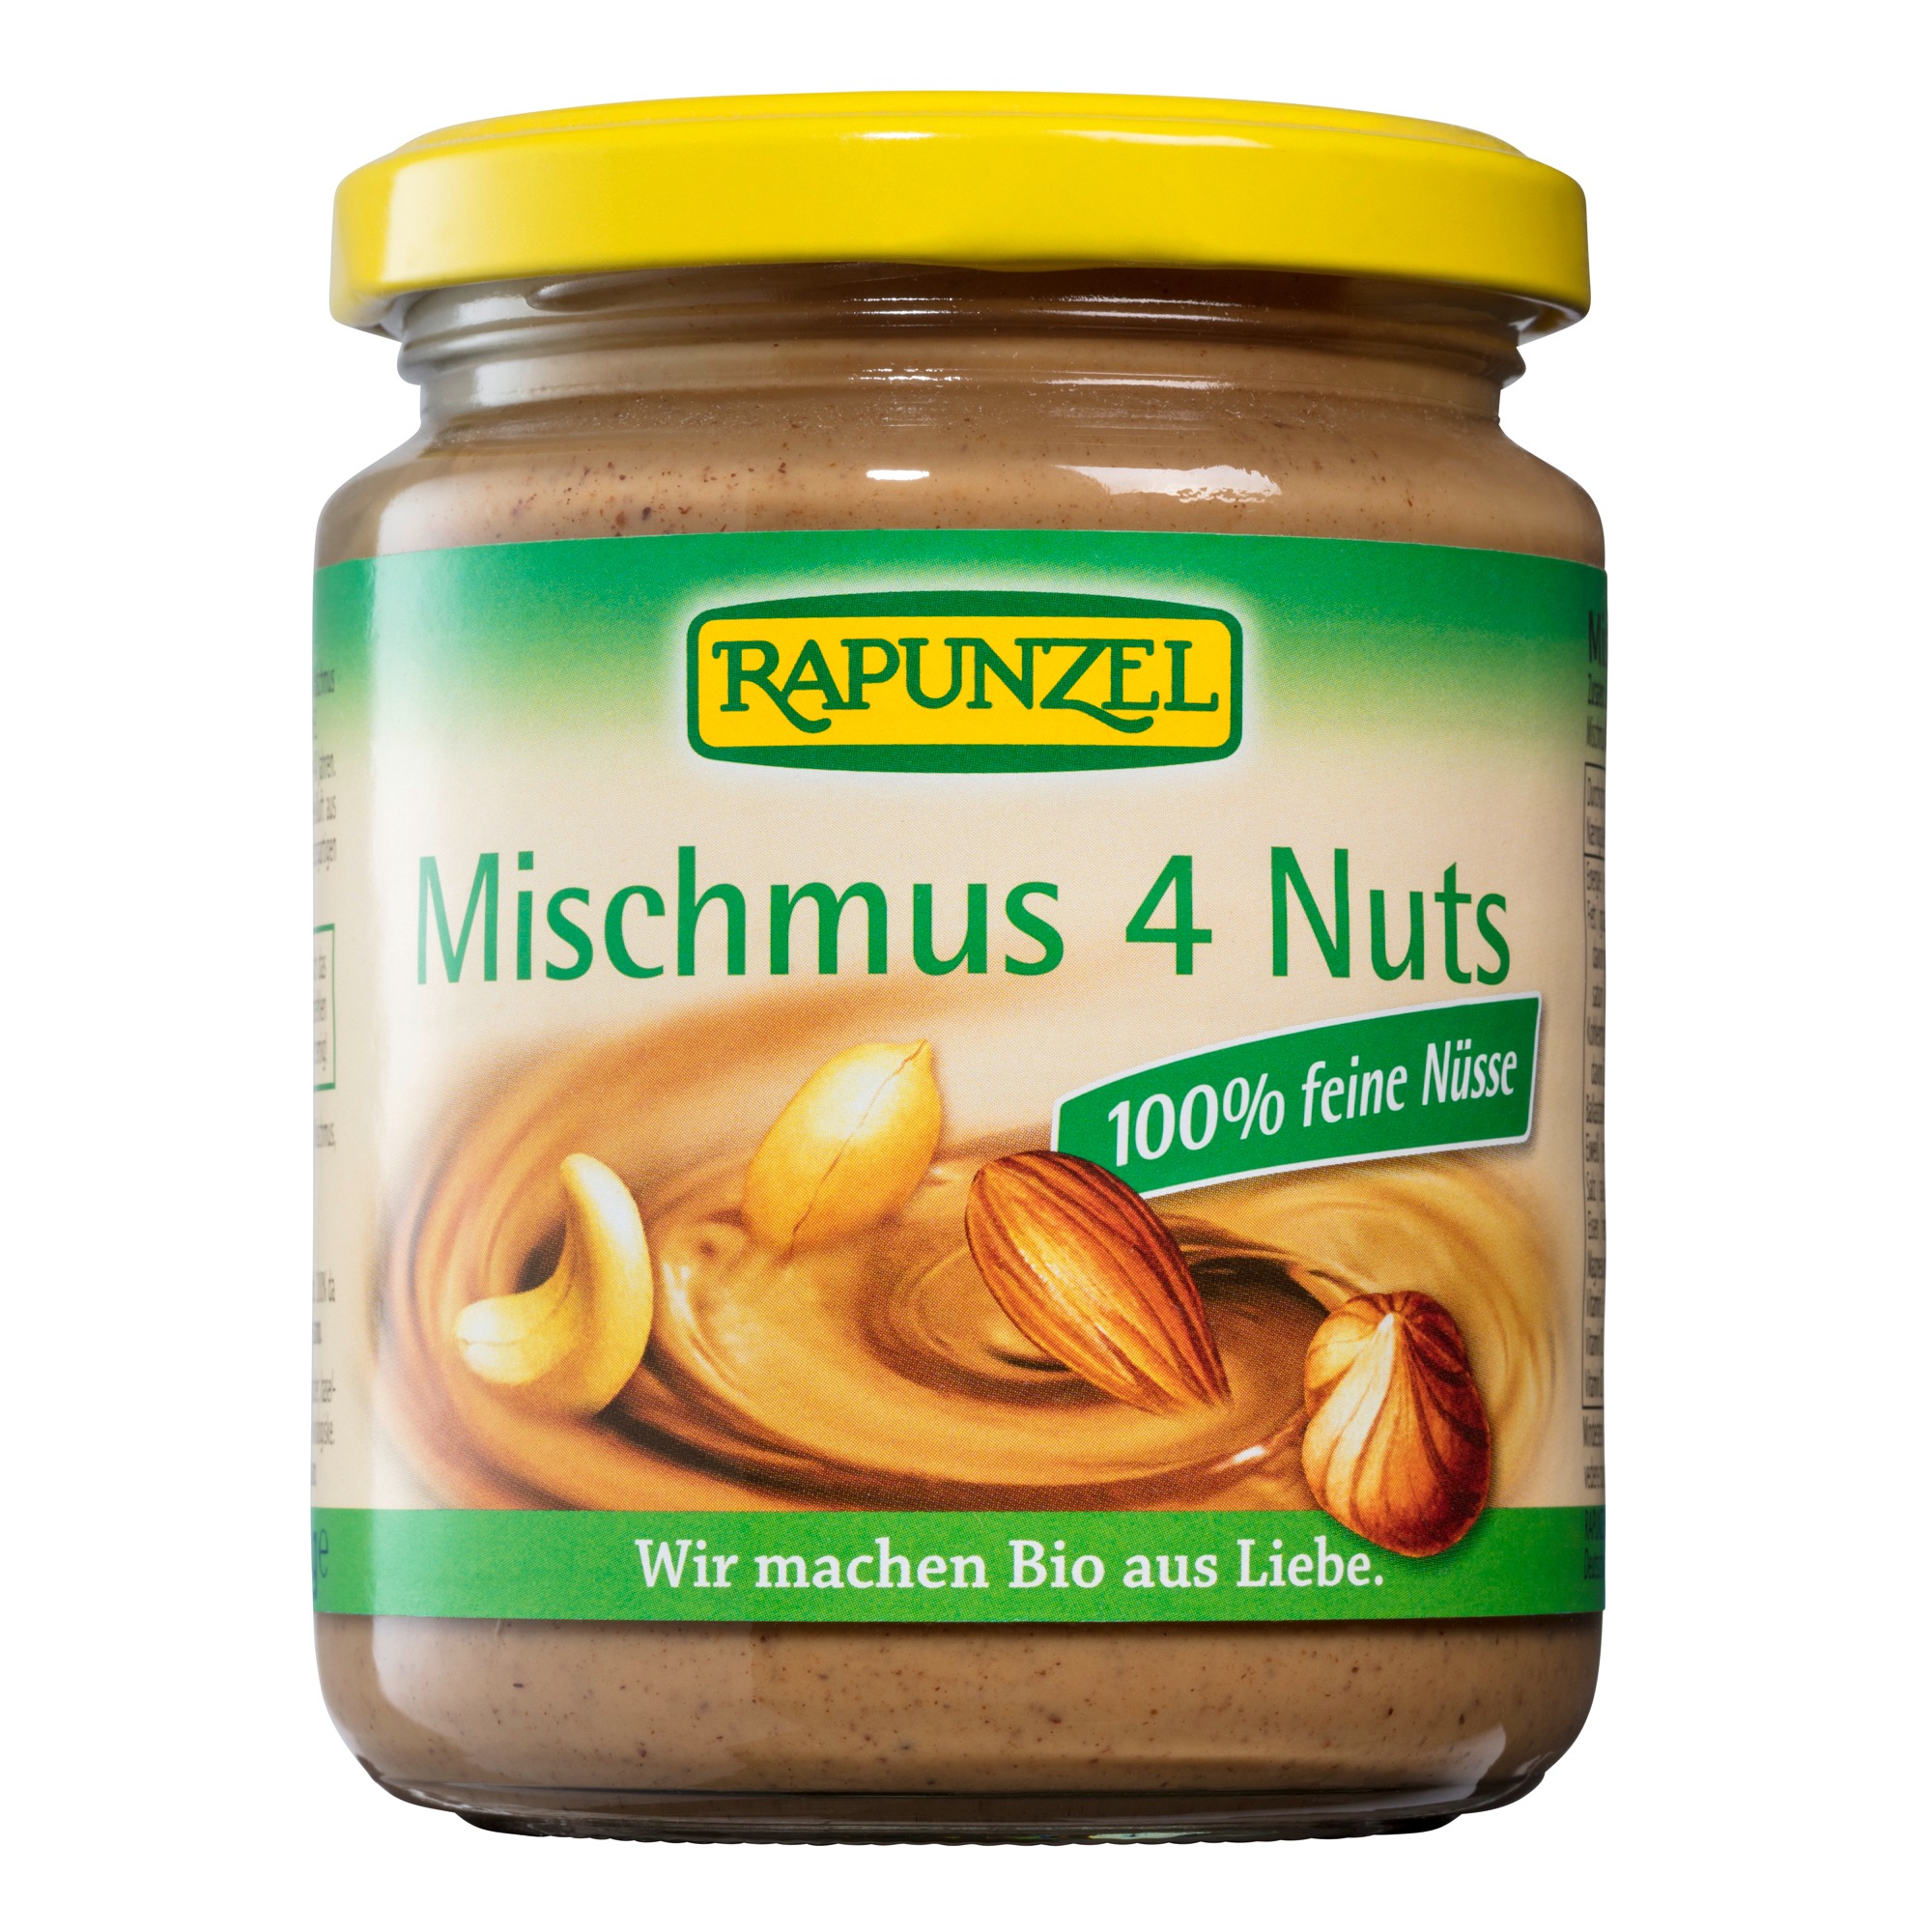 Mischmus 4 Nuts von Rapunzel.